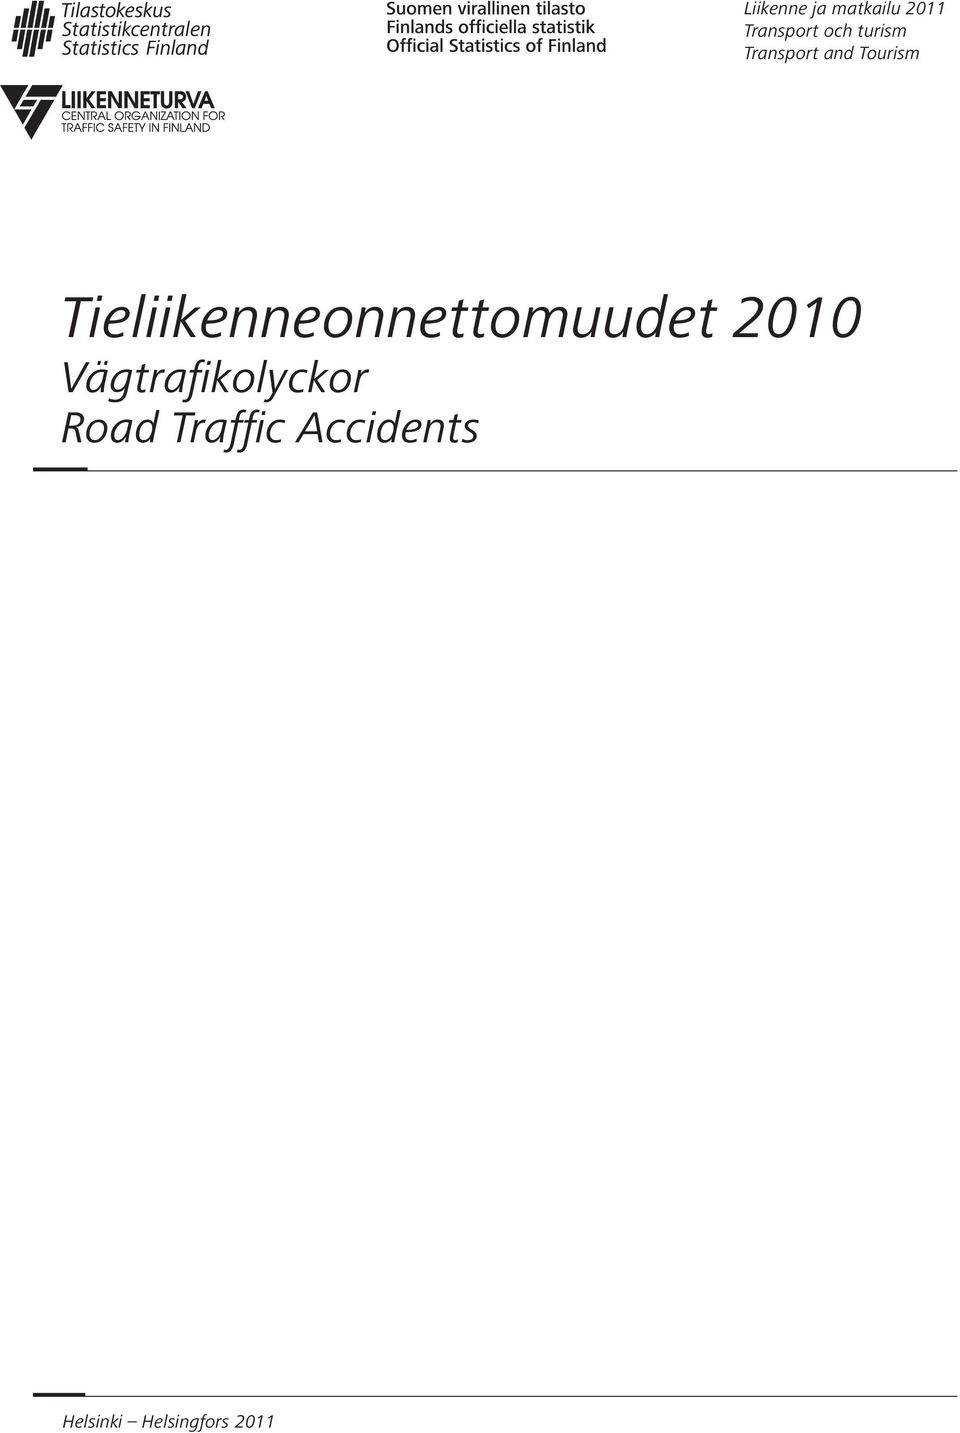 Tieliikenneonnettomuudet 2010